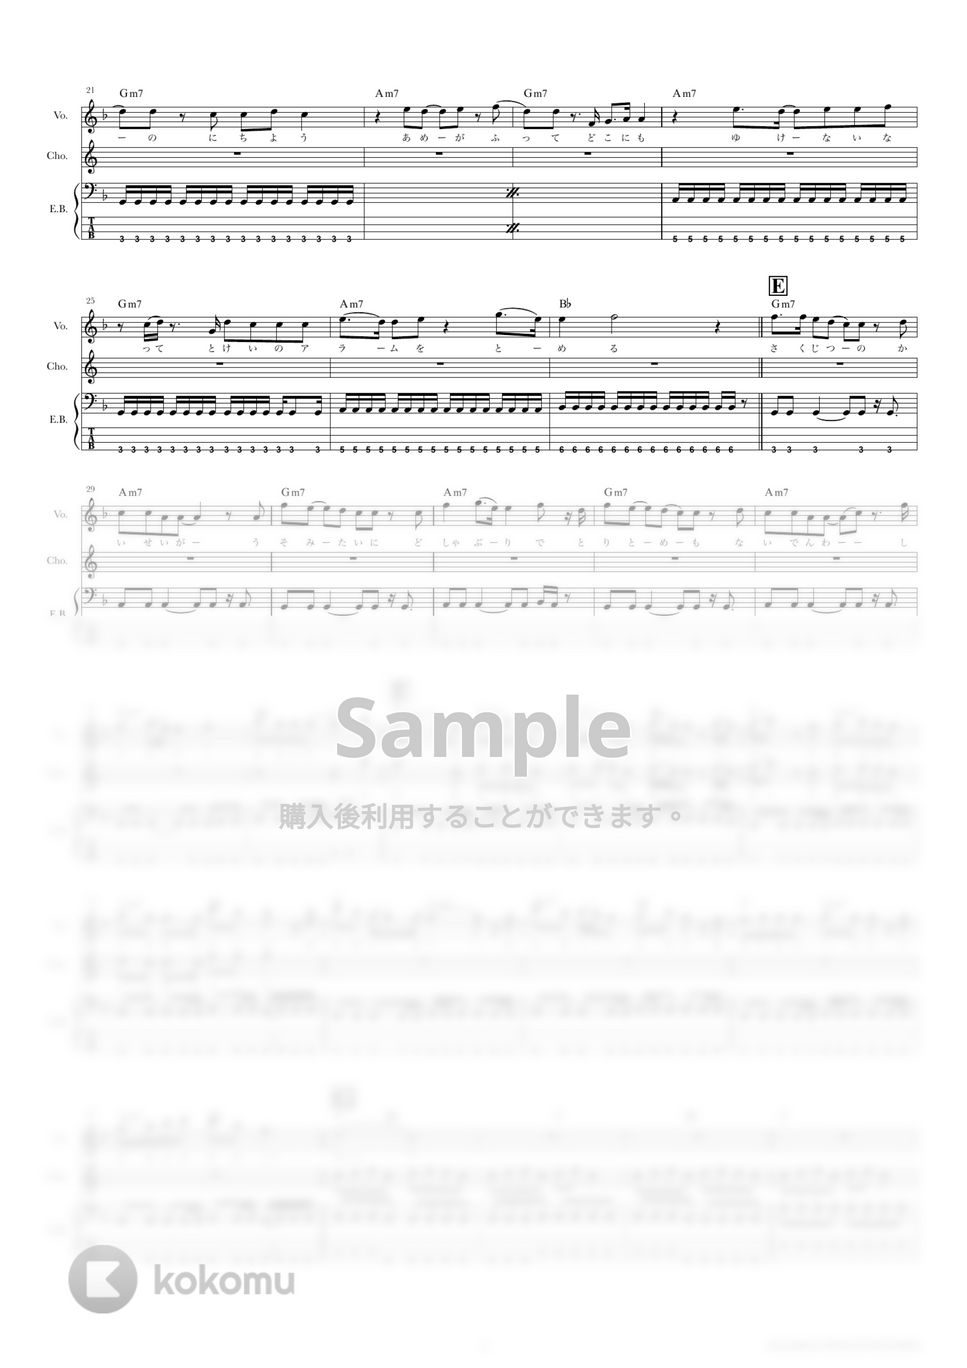 きのこ帝国 - 東京 (ベーススコア・歌詞・コード付き) by TRIAD GUITAR SCHOOL